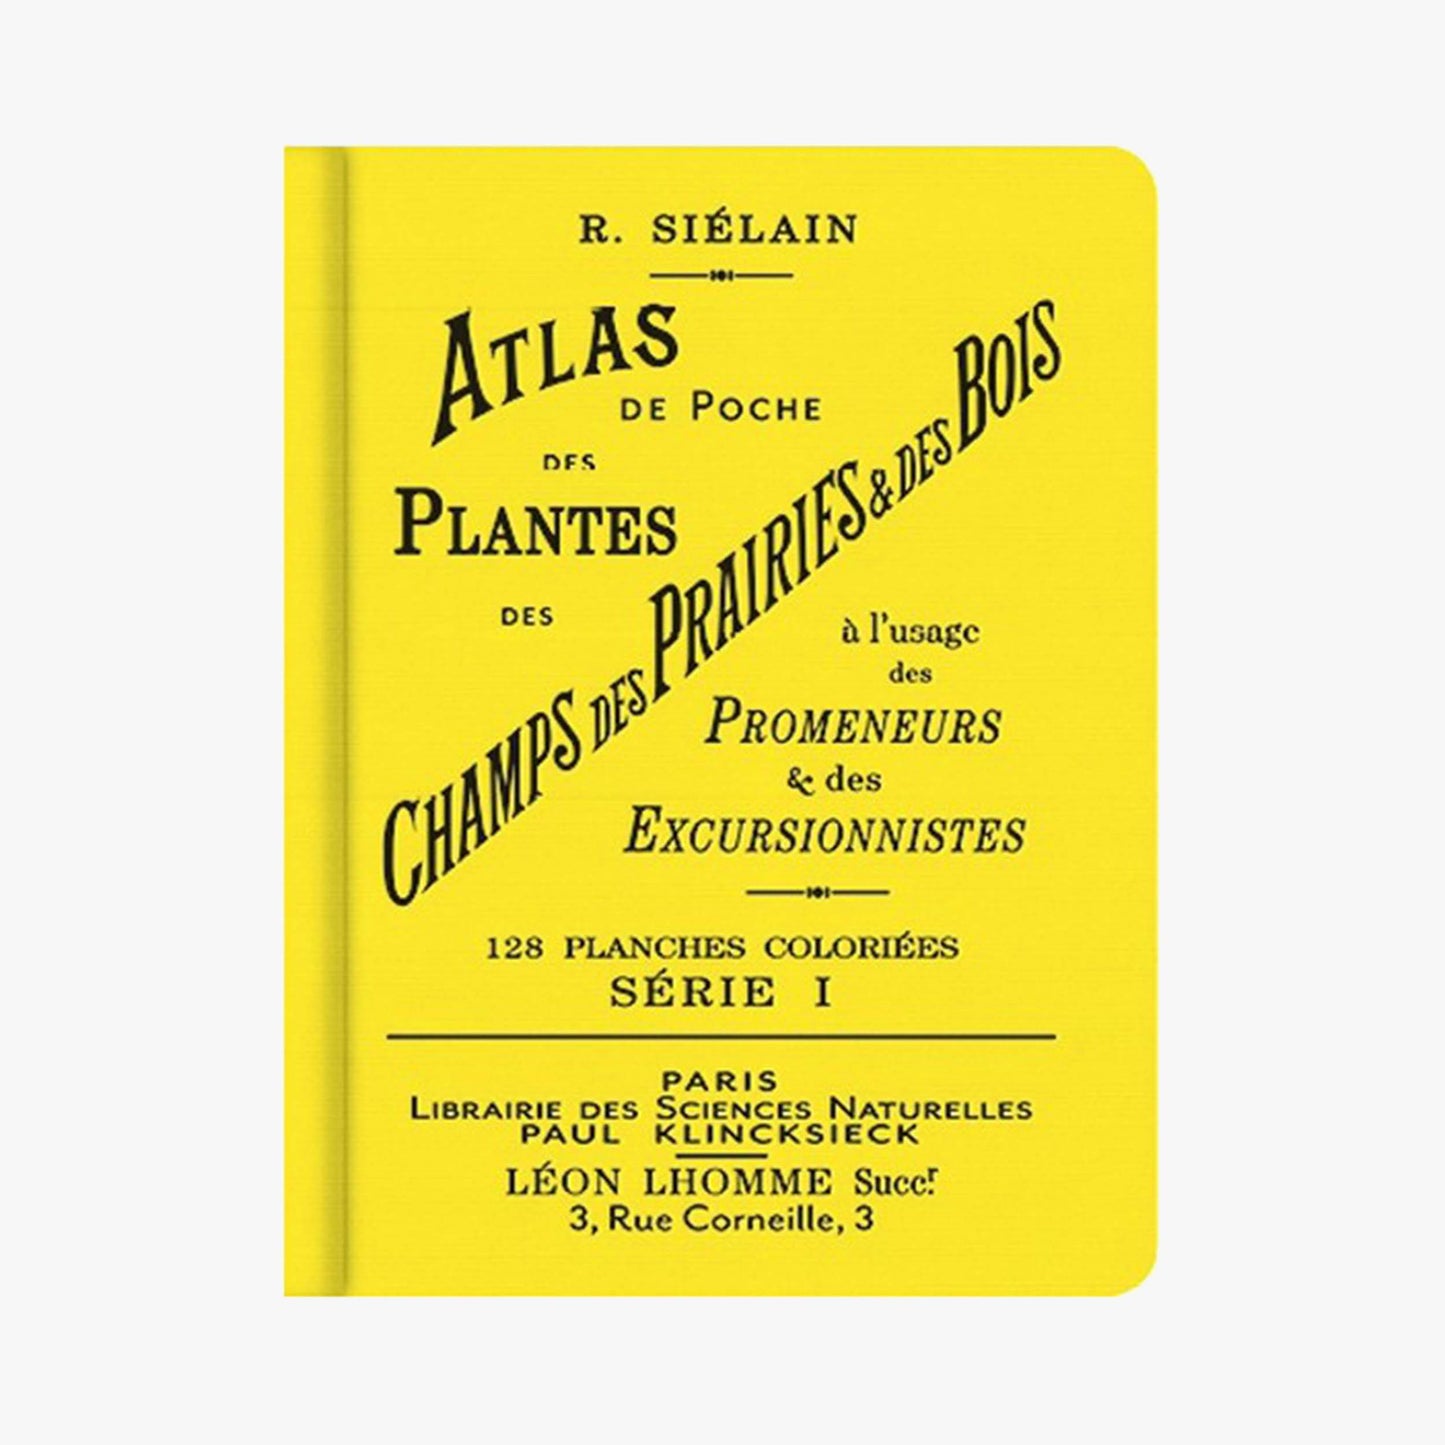 Atlas de poche des plantes des champs des prairies et des bois Serie 1